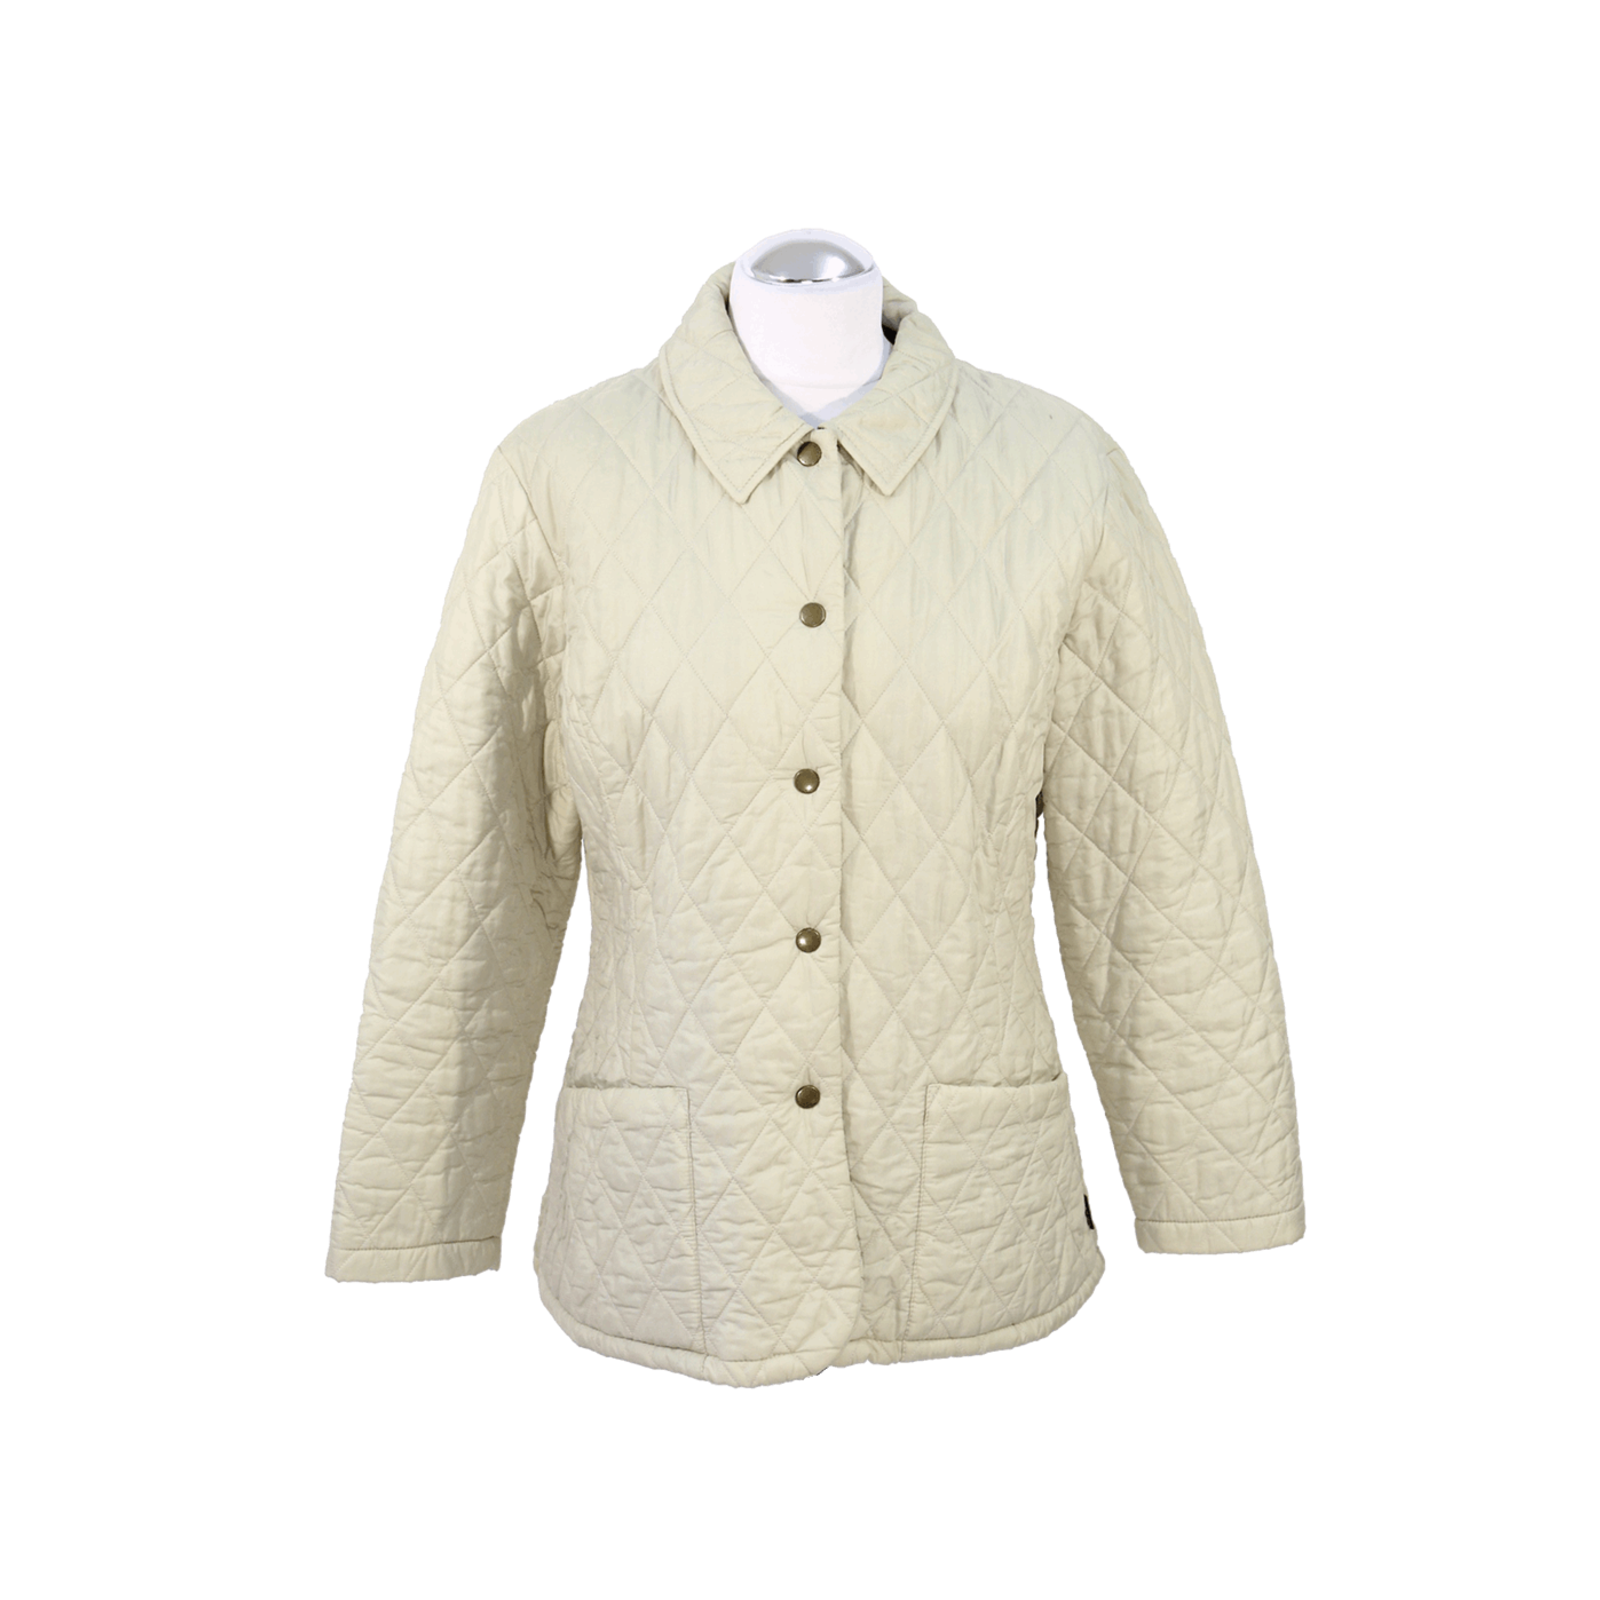 Barbour Jacket/Coat in Cream - Second Hand Barbour Jacket/Coat in Cream buy  used for 99€ (4550200)